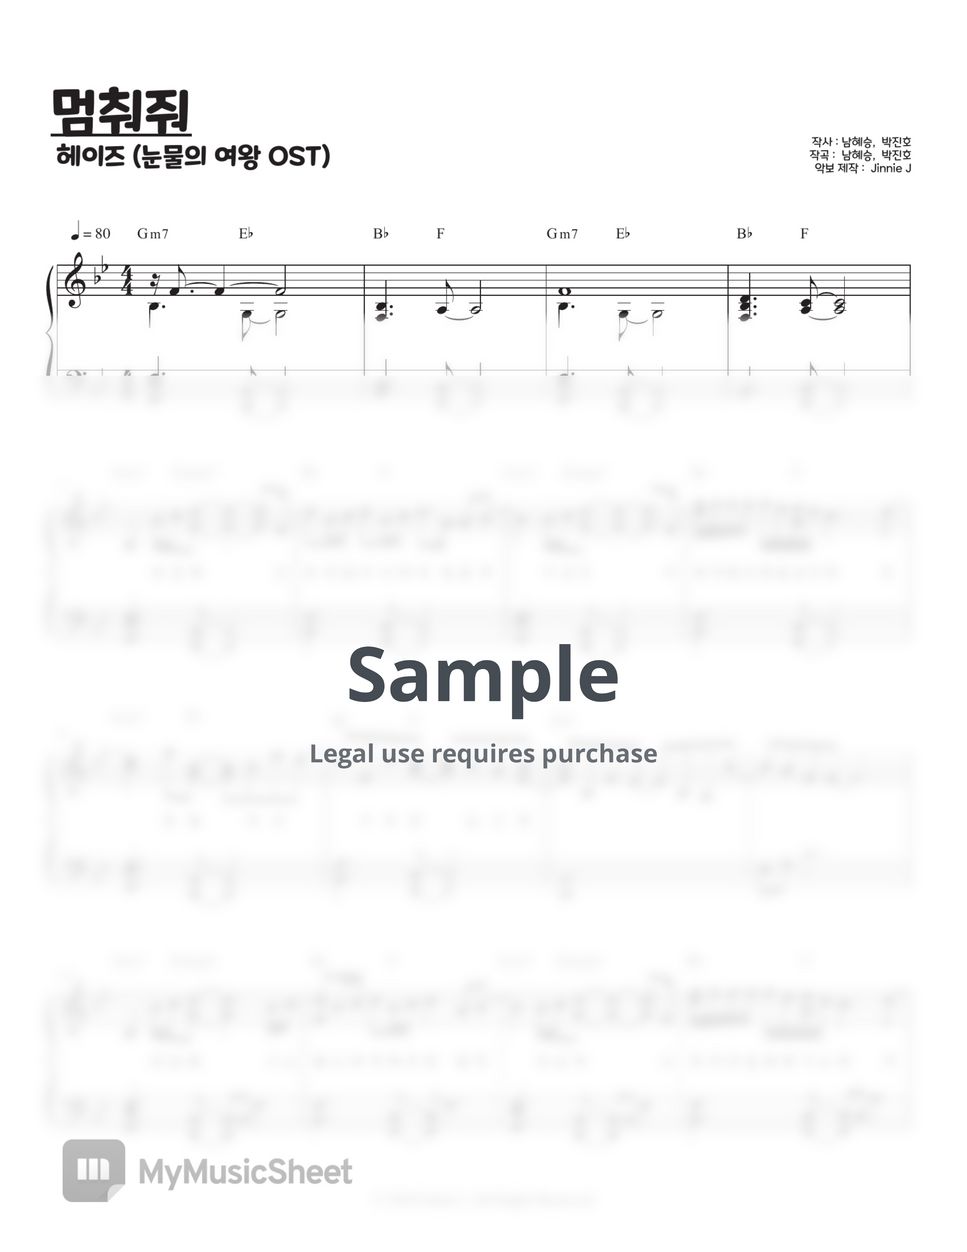 헤이즈 (Heize) - 멈춰줘 (눈물의 여왕 OST) (중상급, Bb, C key) by Jinnie J